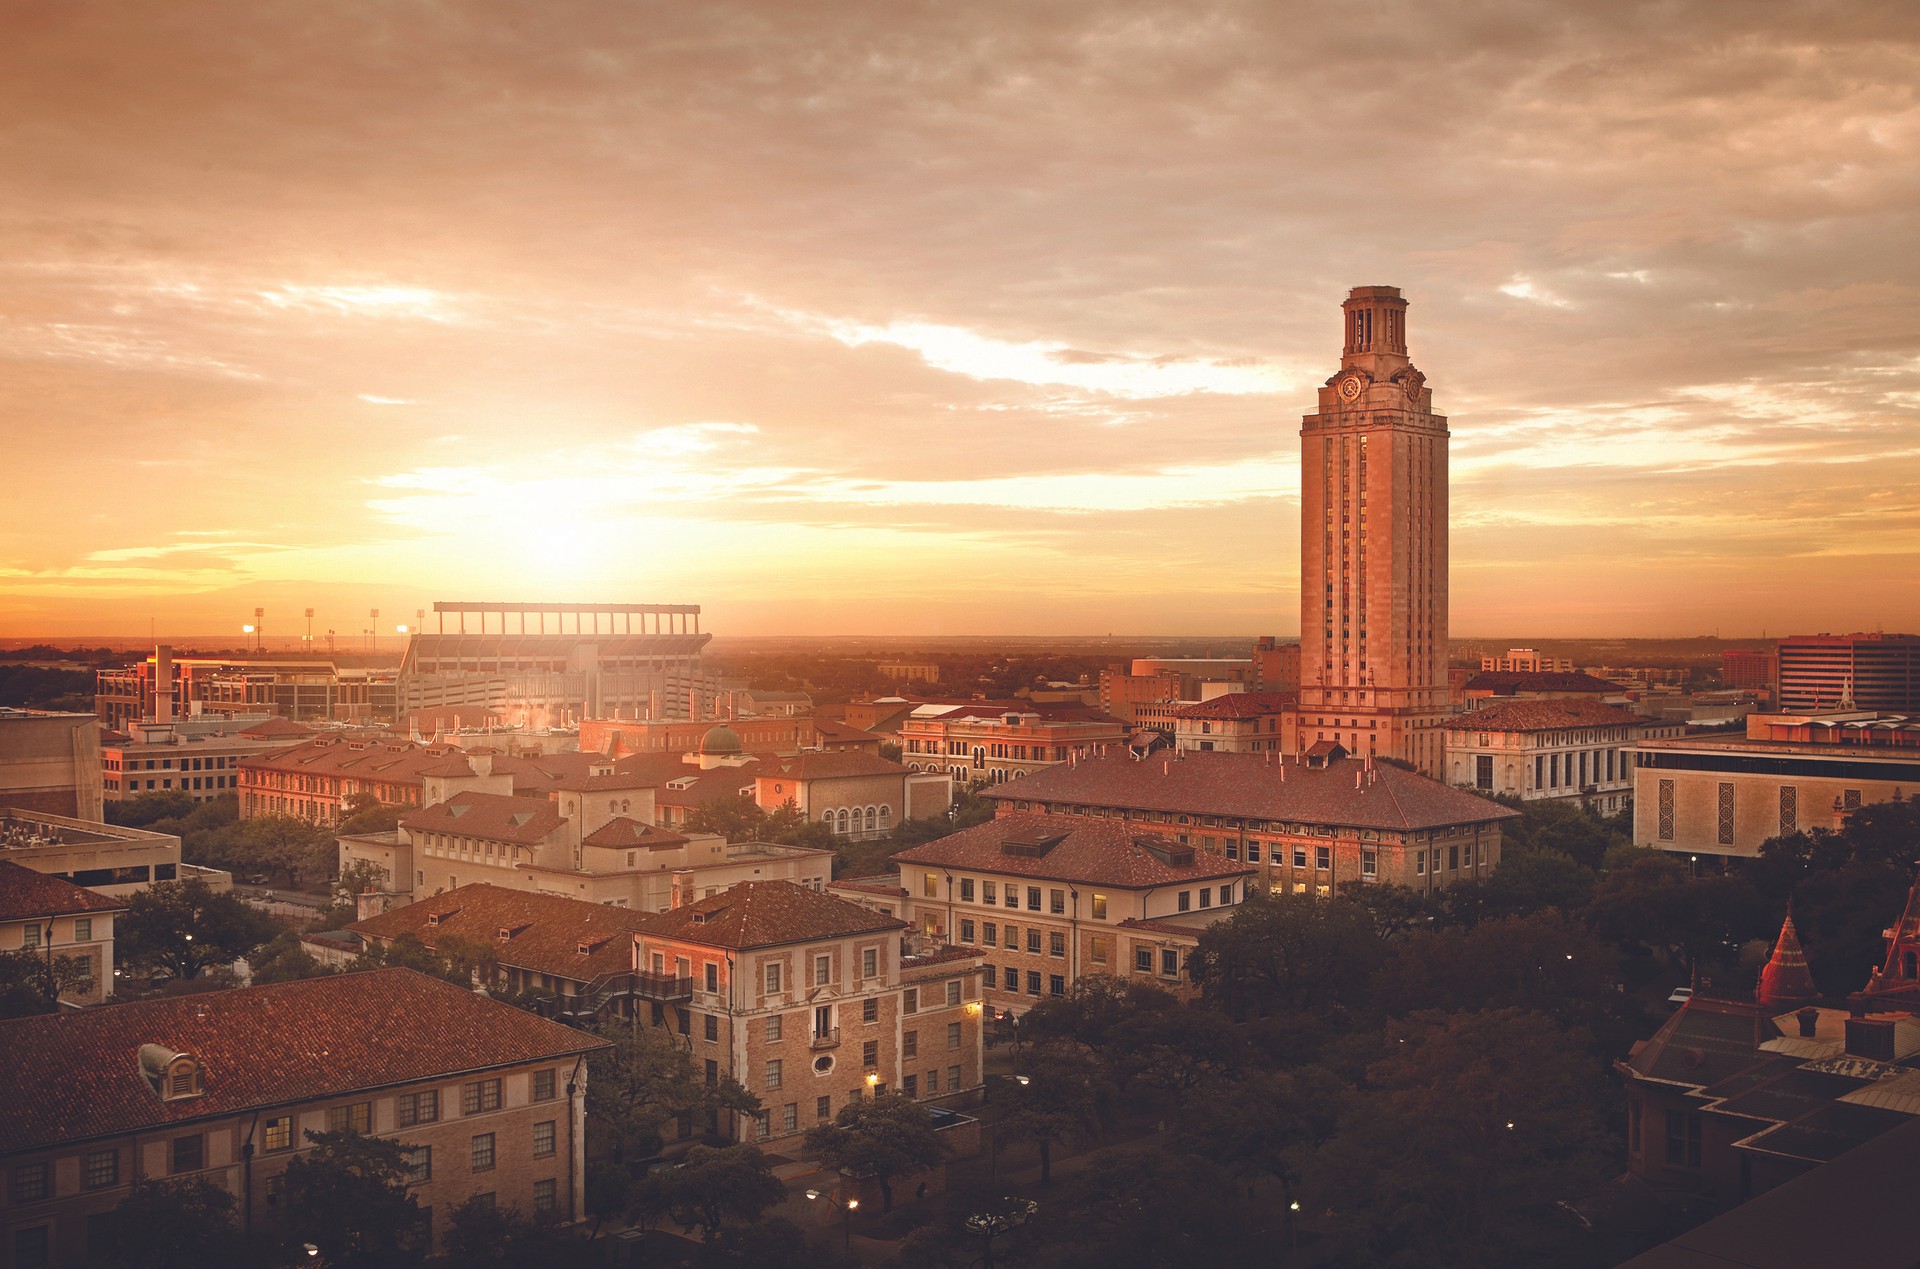 UT Austin campus image at sunset